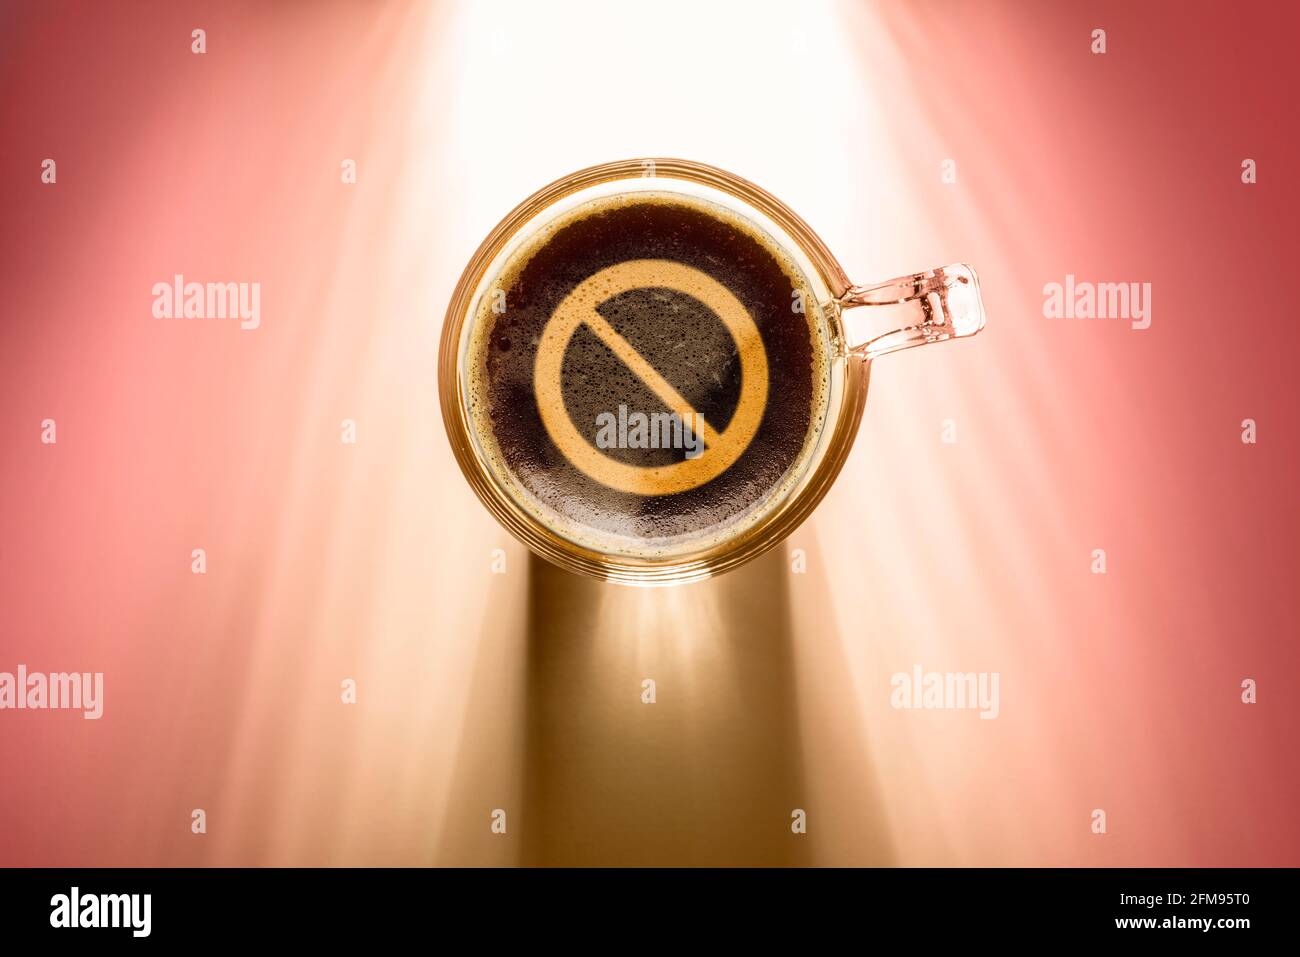 Kaffeetasse mit Verbotsschild, Draufsicht auf Hintergrund mit Sonnenlicht. Stockfoto